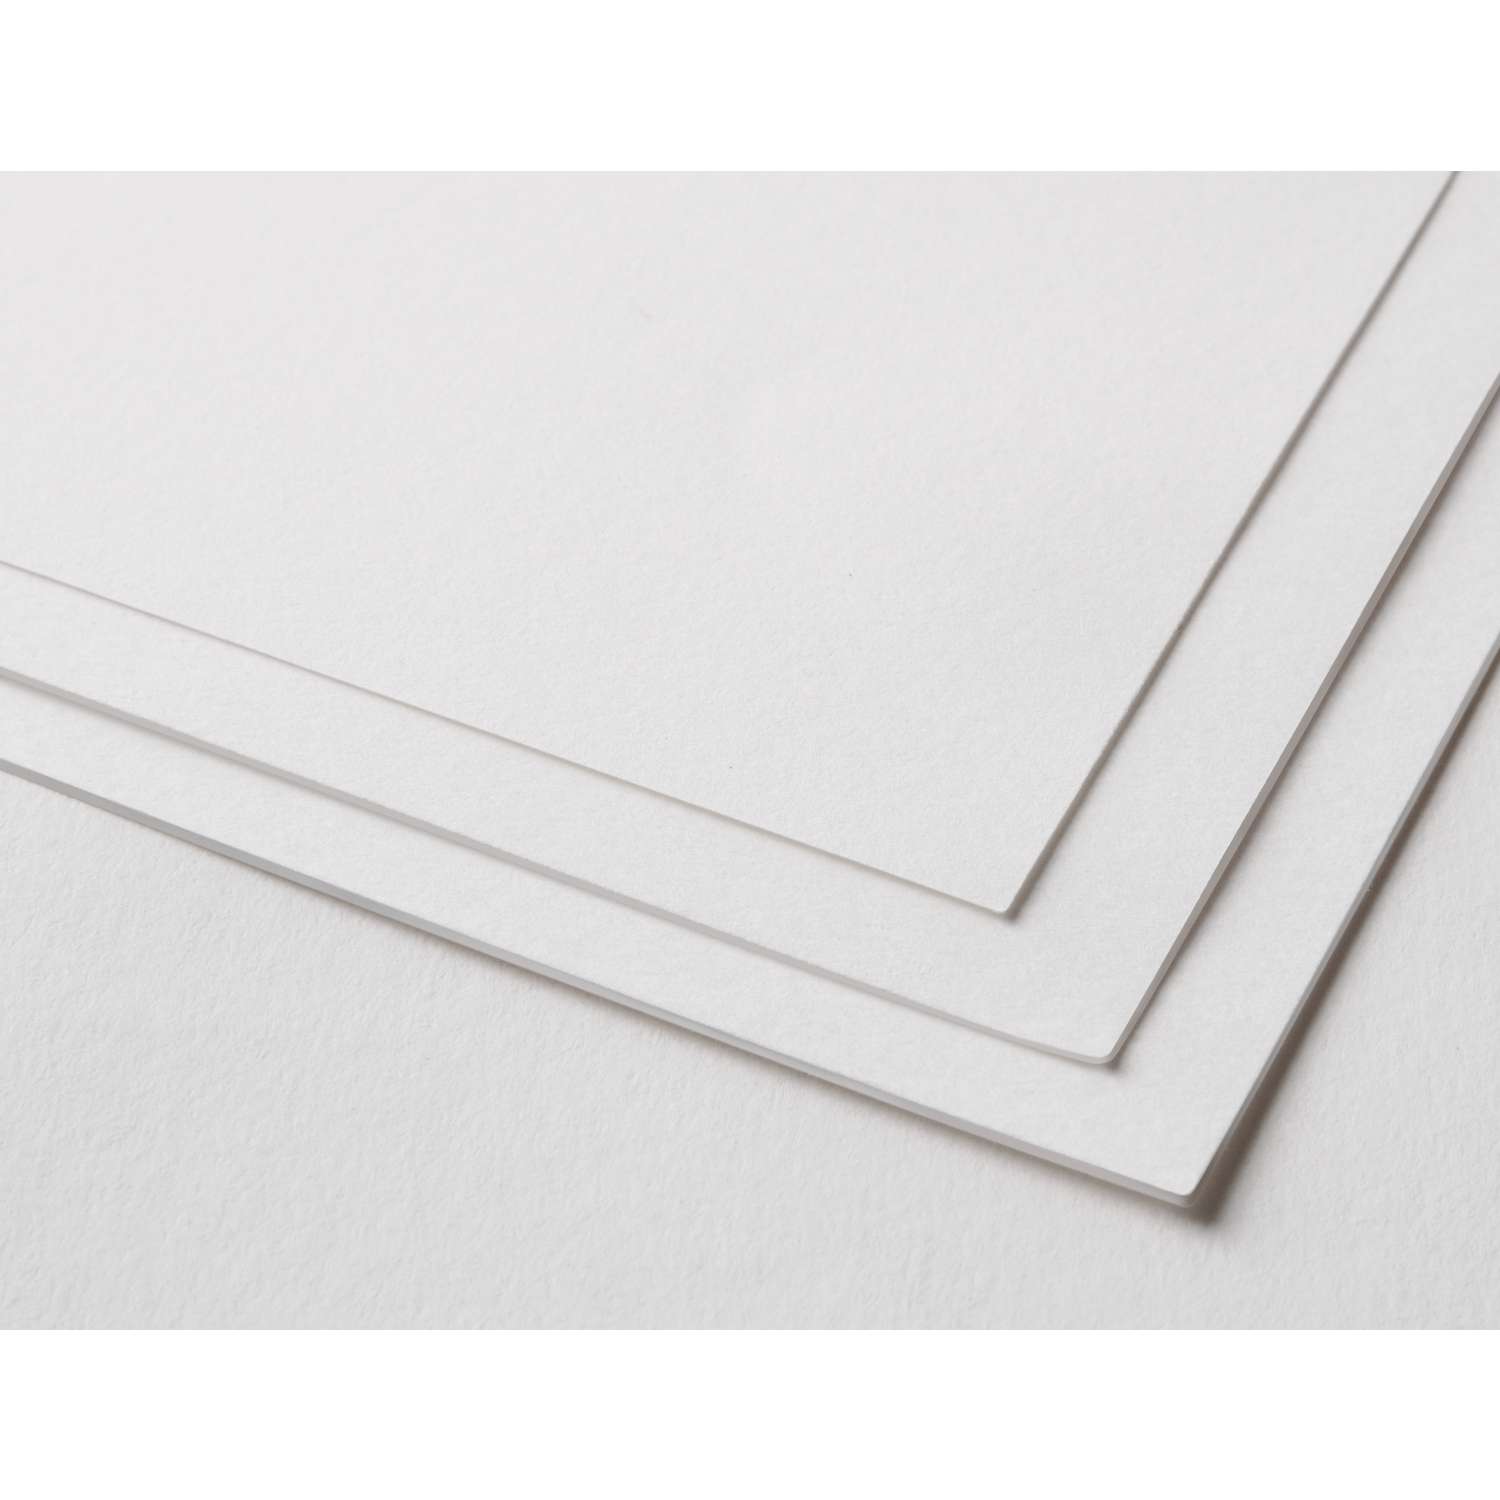 Papier à dessin Fabriano - Rouleau papier 1,5m x 10m